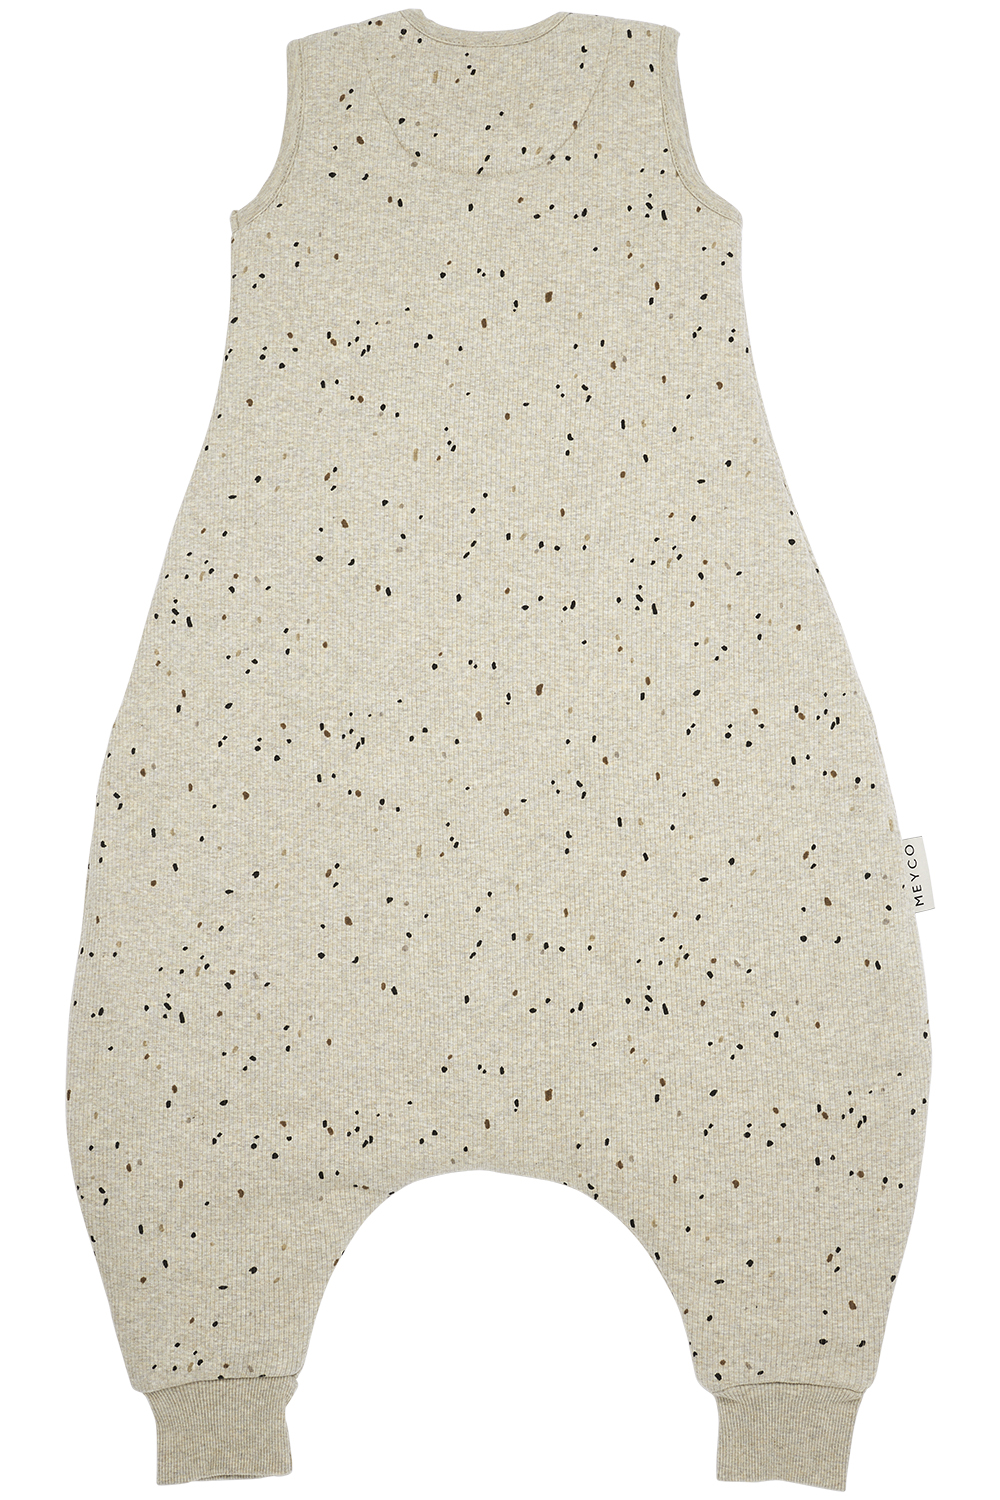 Baby winter sleep overall jumper Rib Mini Spot - sand melange - 92cm